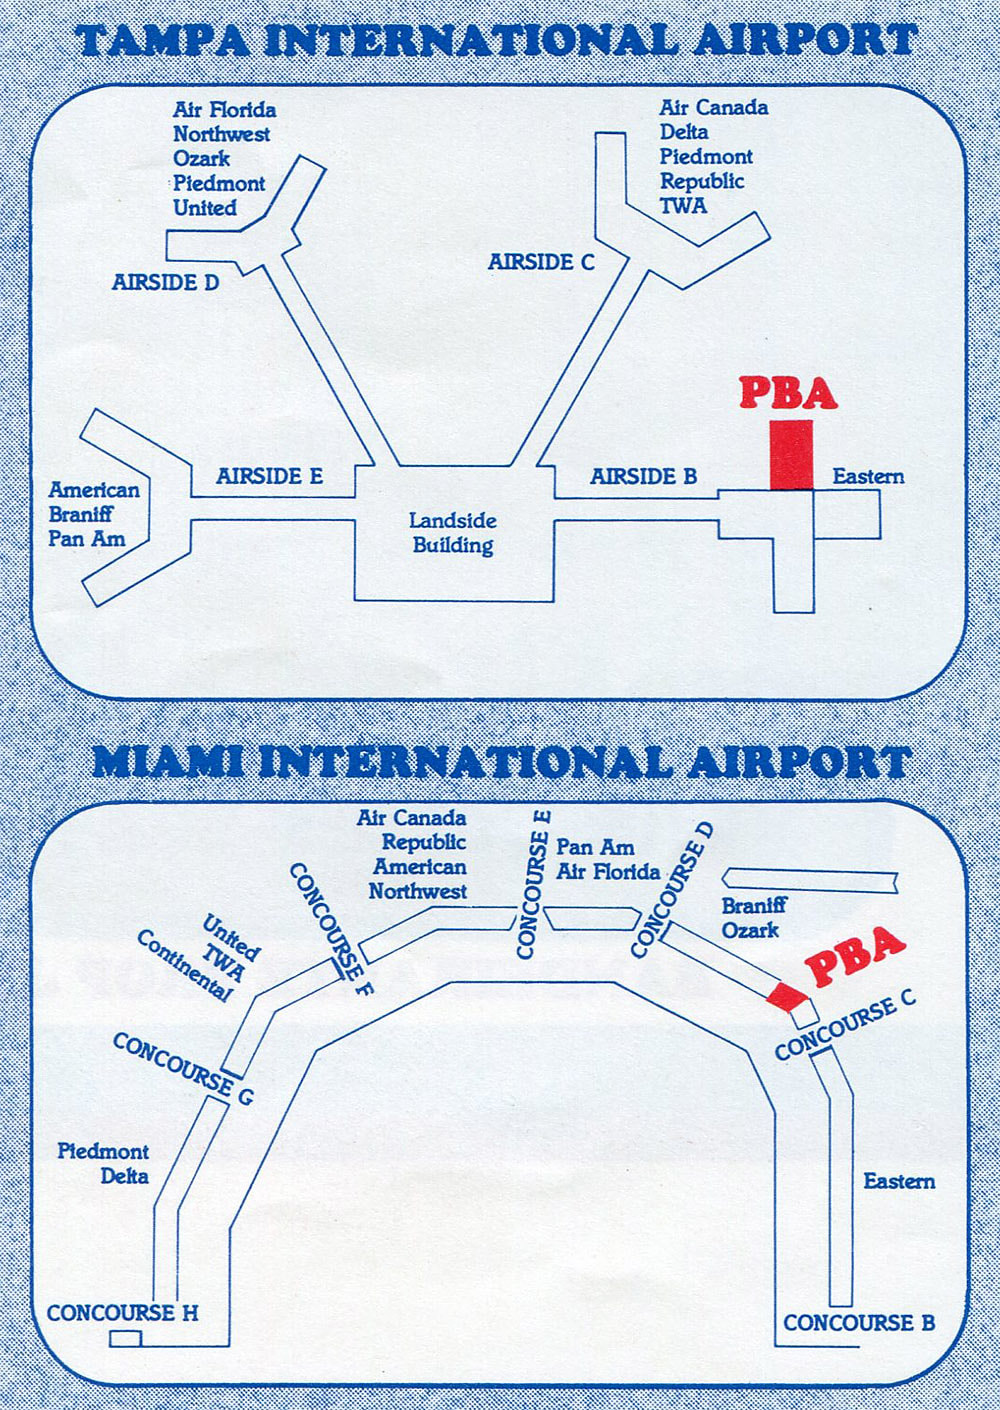 PBA map of Tampa Airport